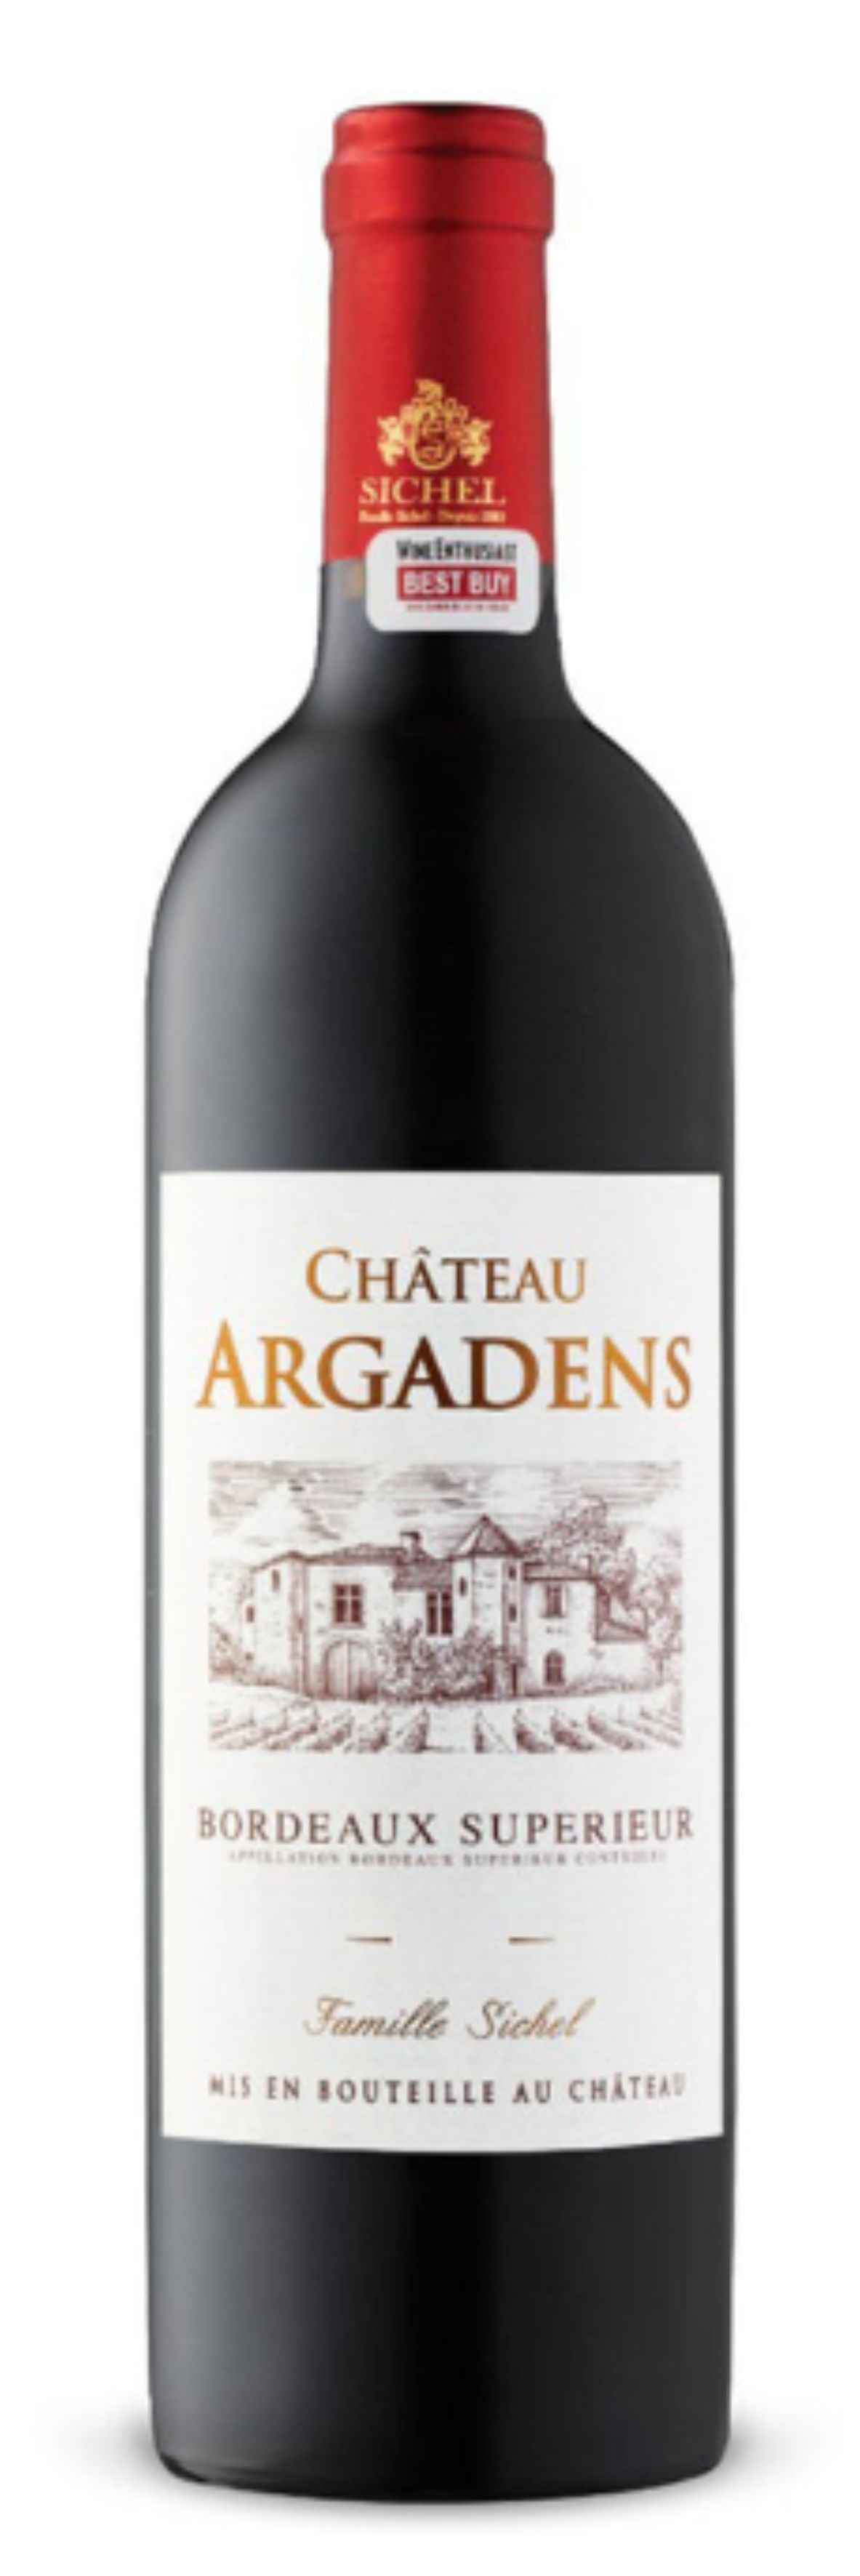 Château Argadens Bordeaux Supérieur